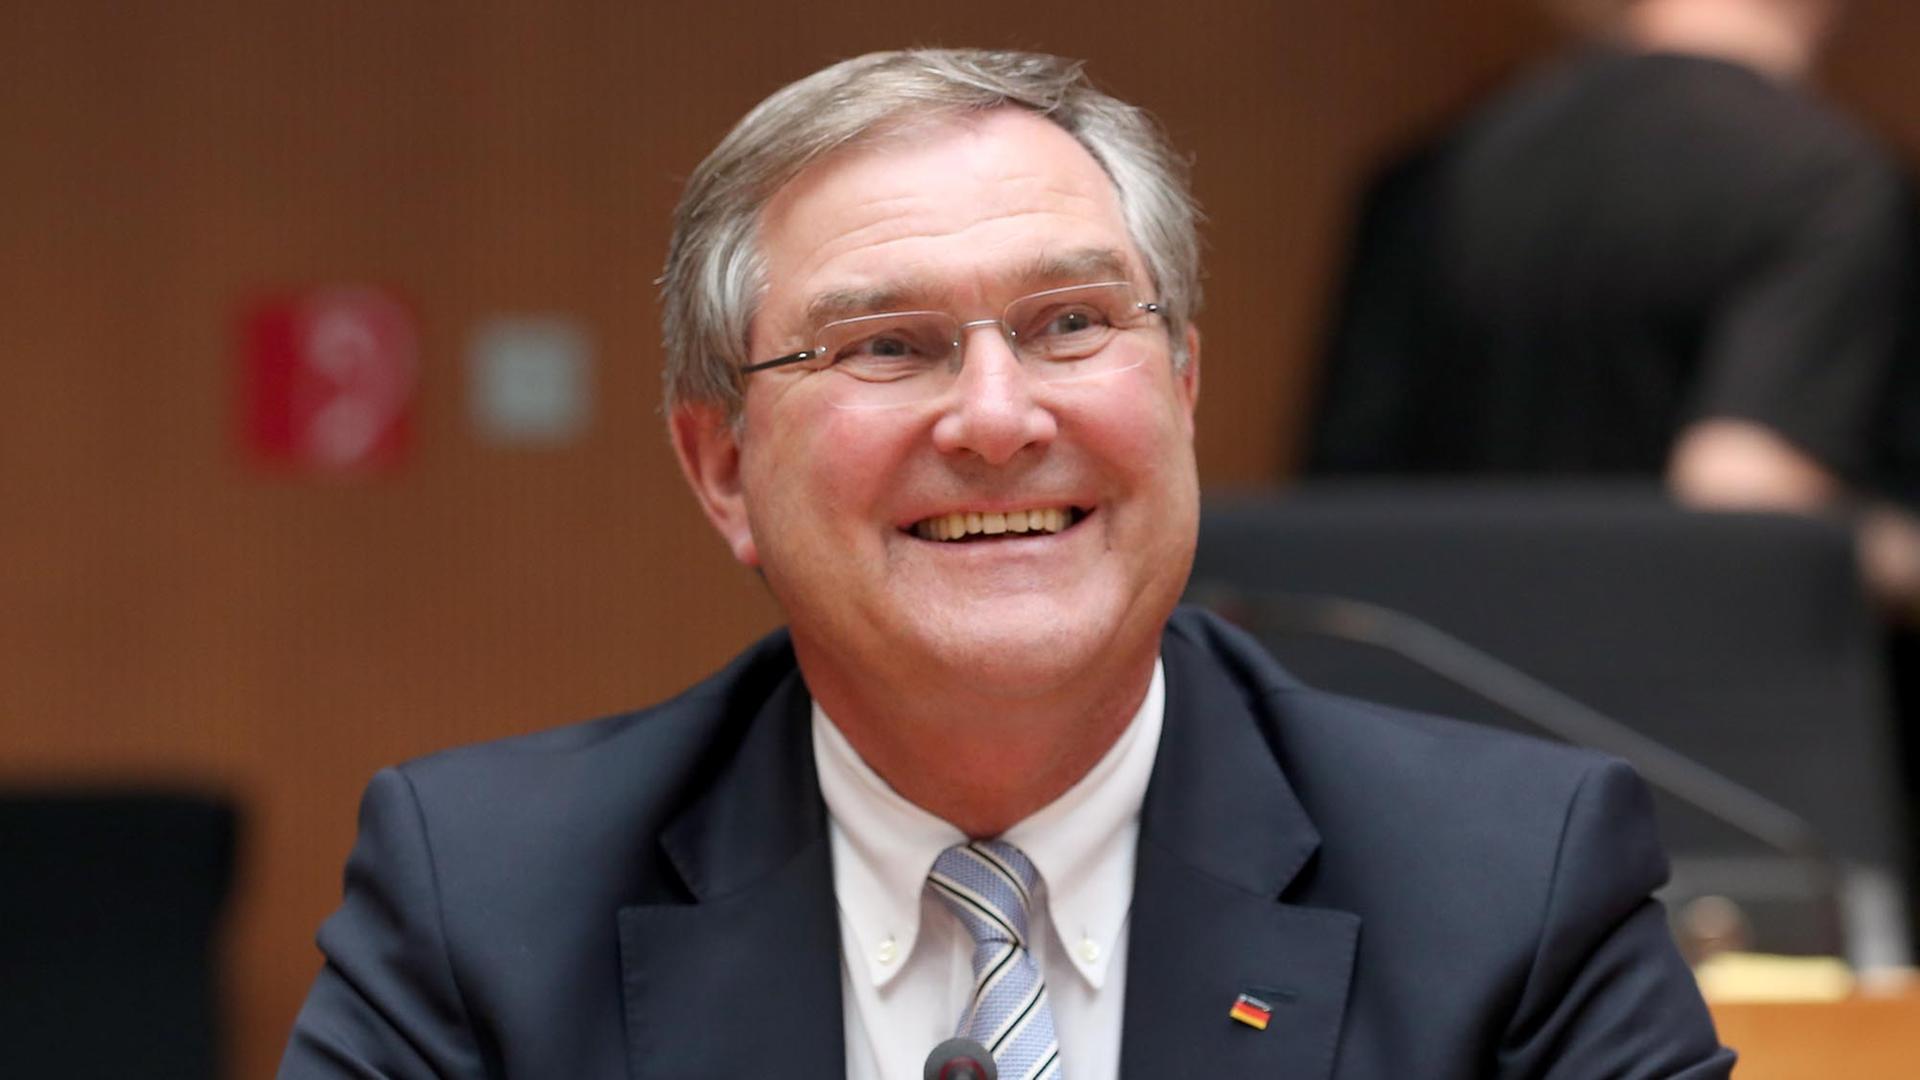 Der ehemalige Bundesverteidigungsminister Franz Josef Jung (CDU) sitzt am 22.07.2013 zu Beginn der Zeugenvernehmung im Drohnen-Untersuchungsausschuss des Bundestags im Paul-Löbe-Haus in Berlin im Sitzungssaal.